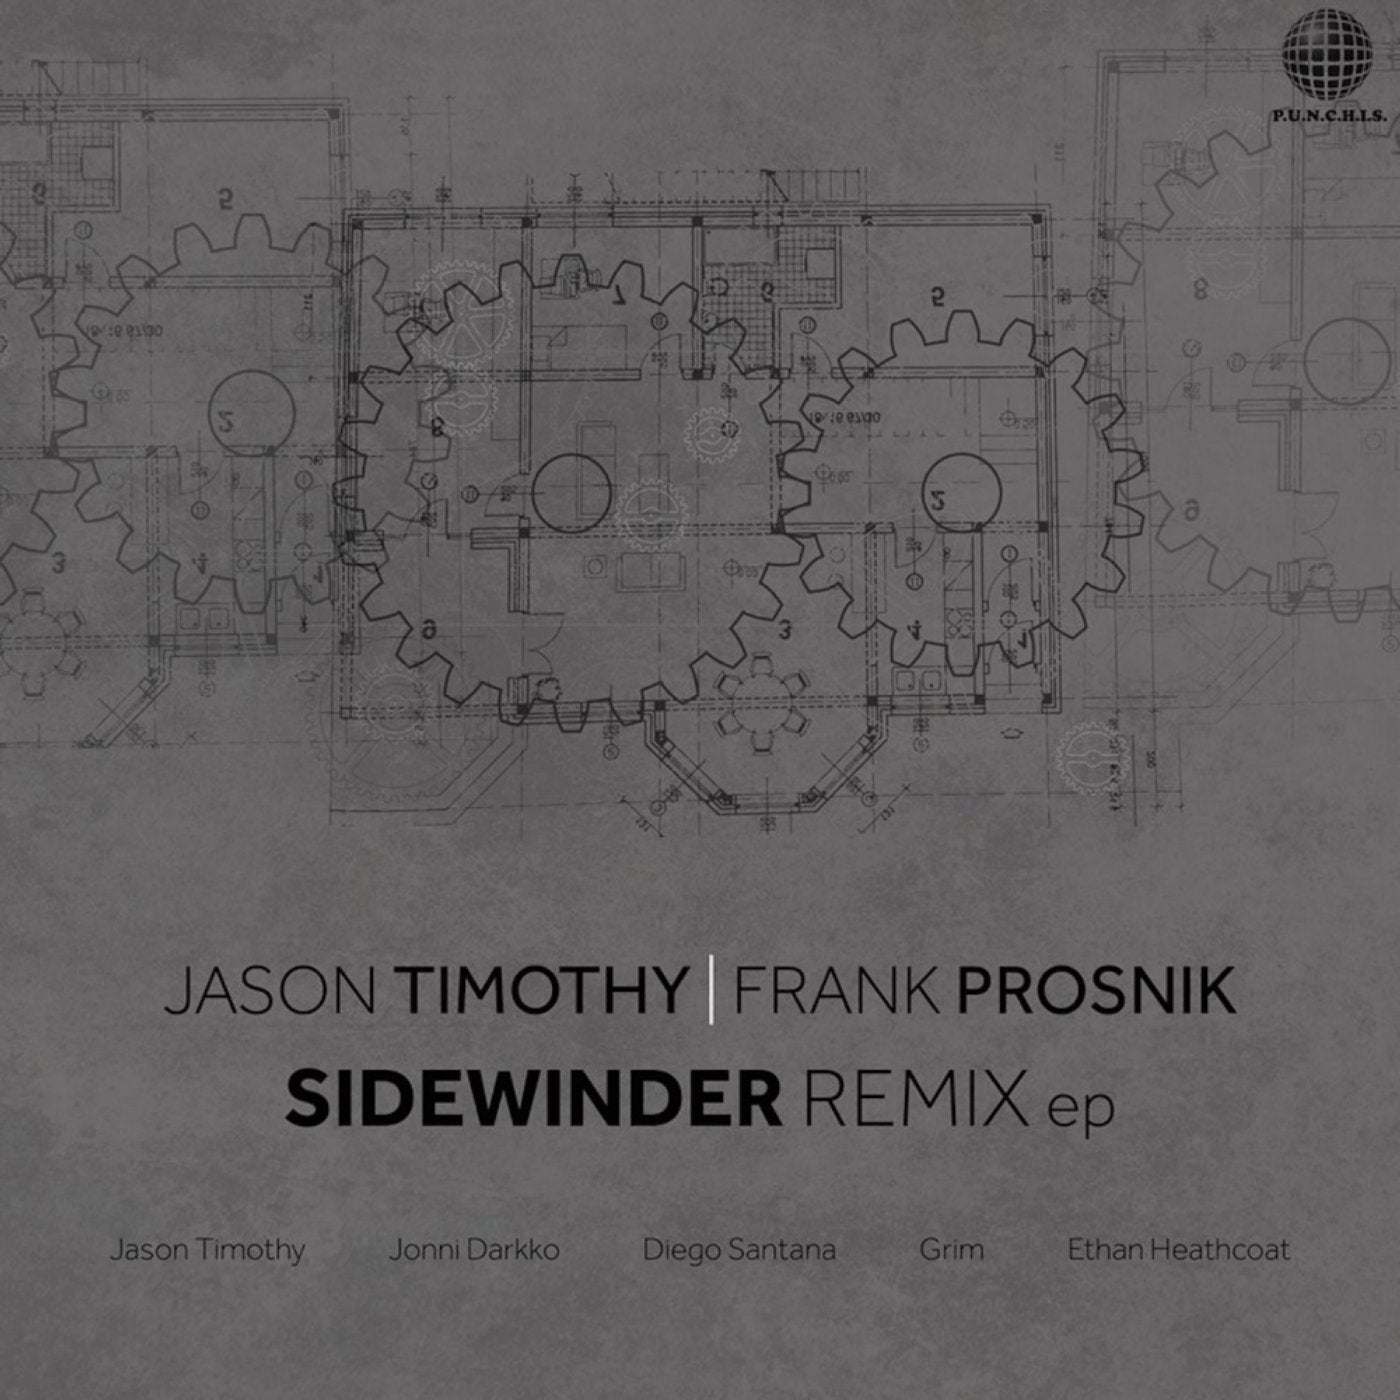 Sidewinder Remix EP